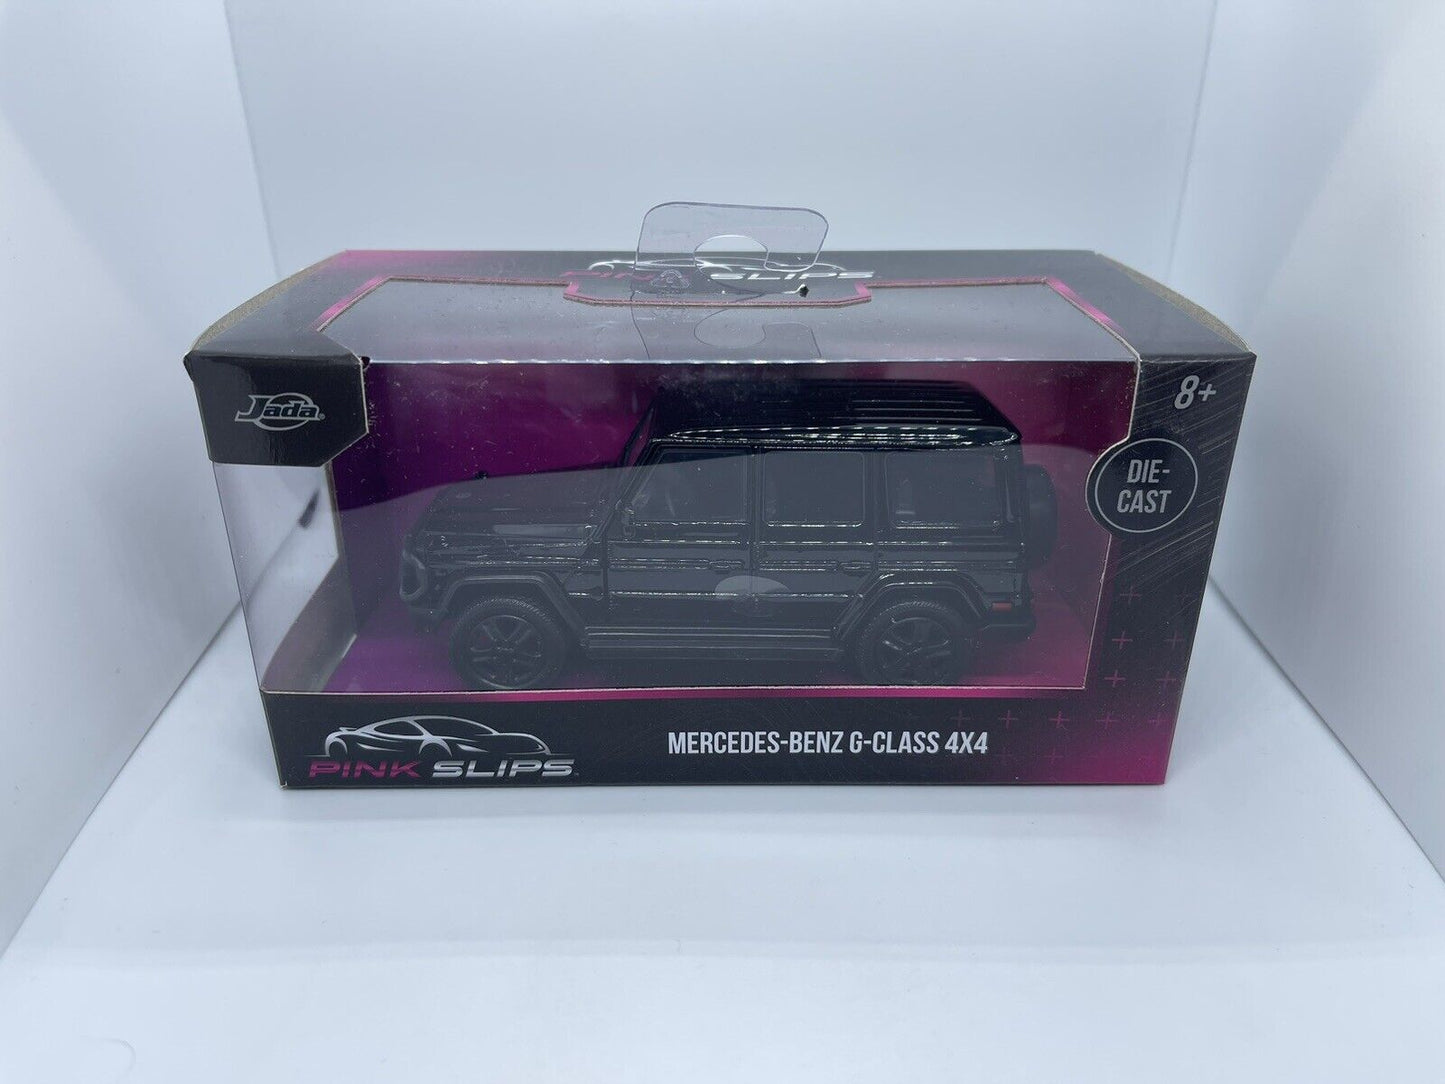 Jada - Mercedes-Benz G-Class 4x4 Black - Pink Slips - 1:32